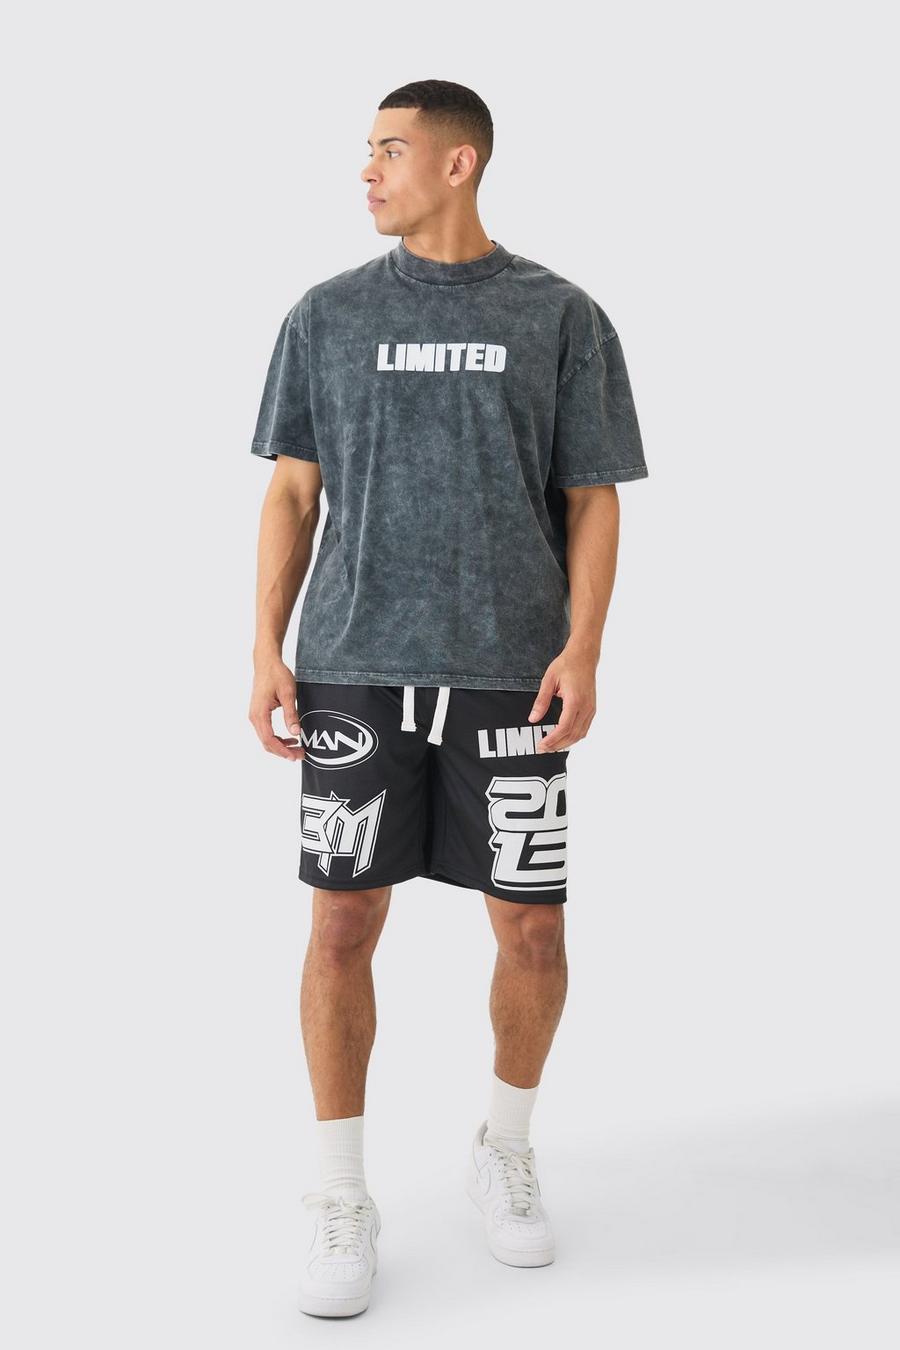 Black Oversized Acid Wash Limited T-shirt & Mesh Basketball Shorts image number 1